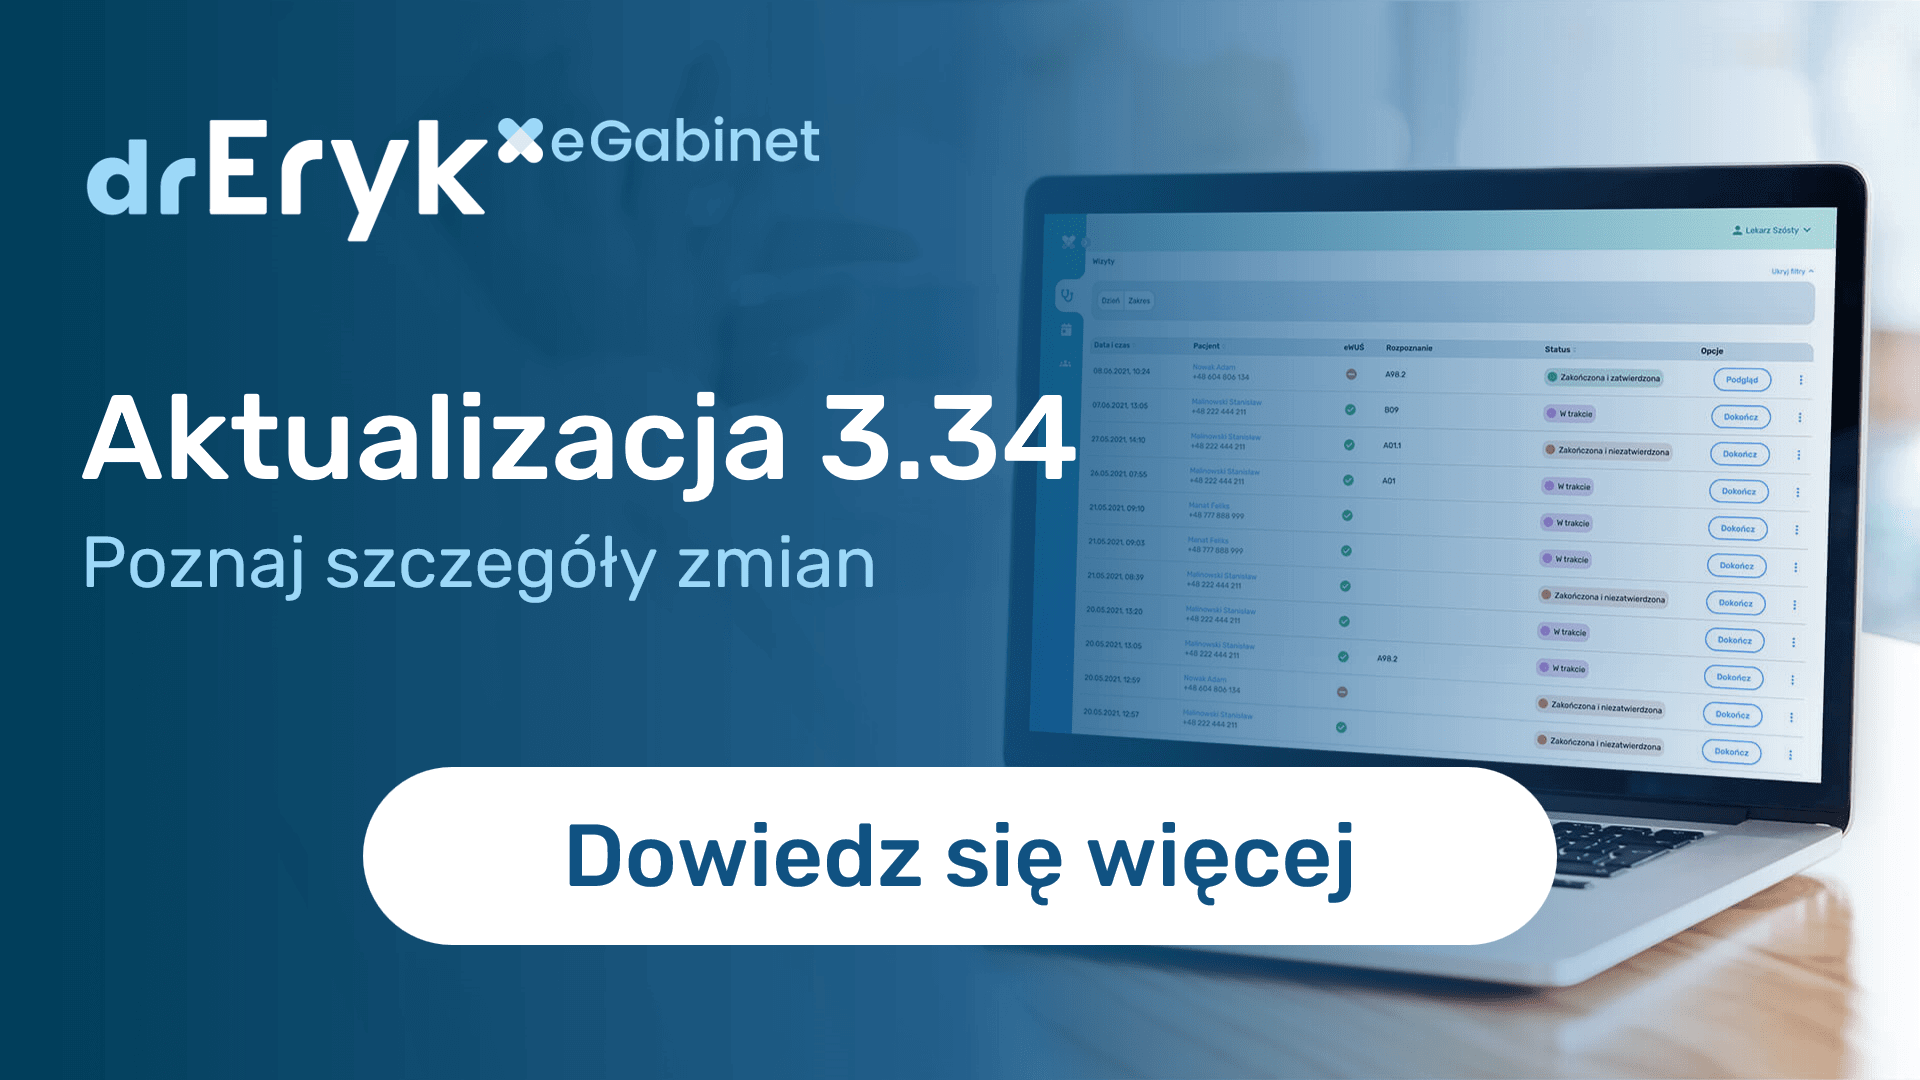 Aktualizacja 3.34 drEryk eGabinet dostępna